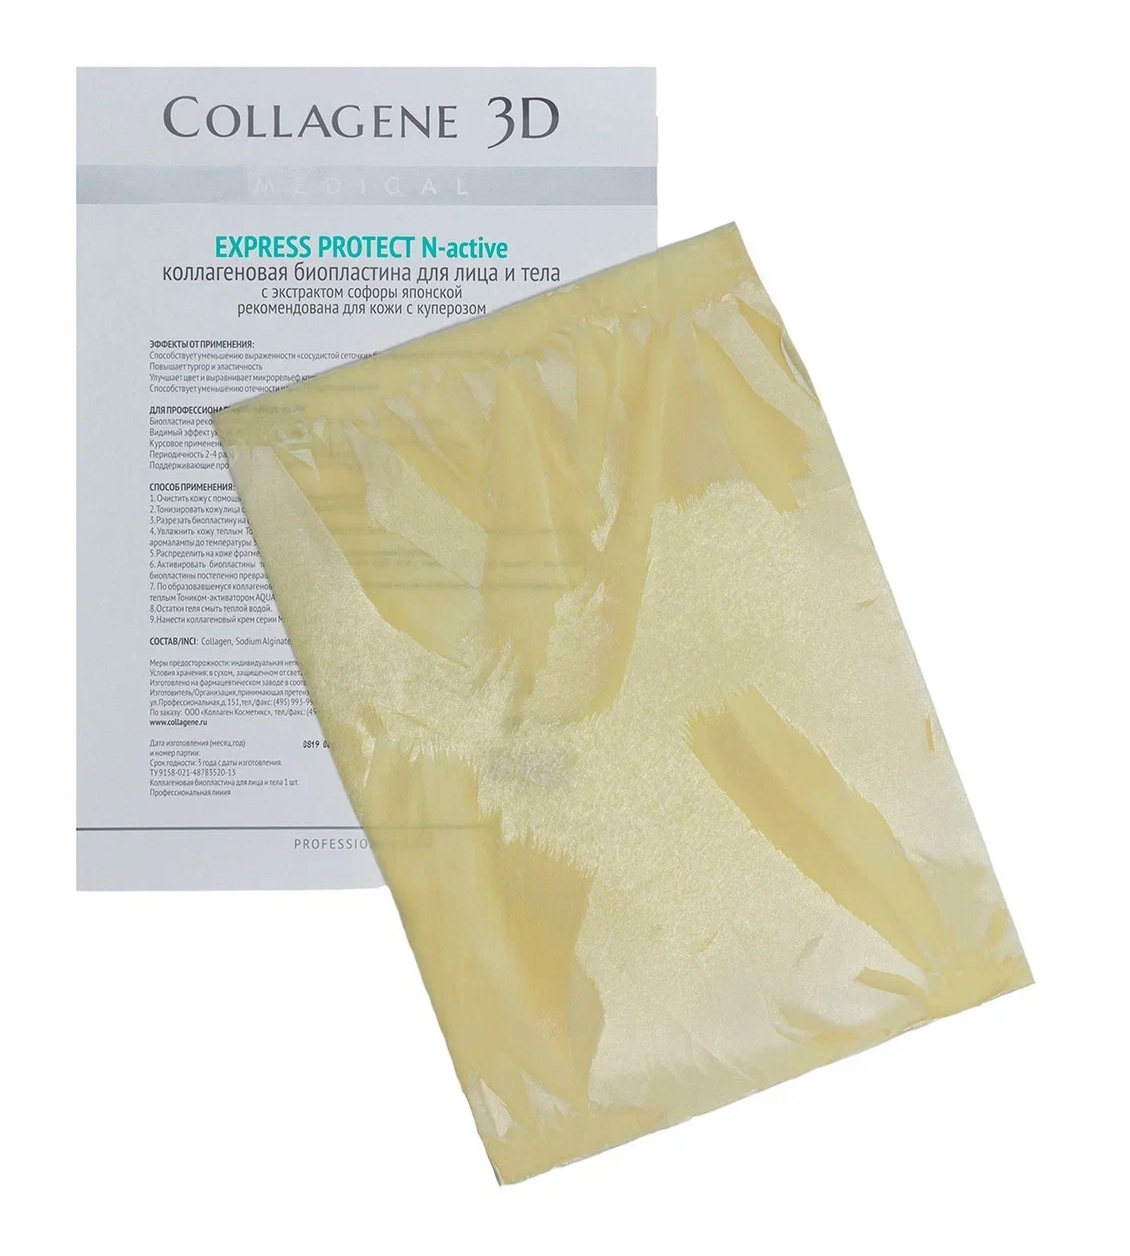 Медикал Коллаген 3Д Биопластины для лица и тела N-актив с экстрактом Софоры японской, А4 (Medical Collagene 3D, Express Protect) фото 0